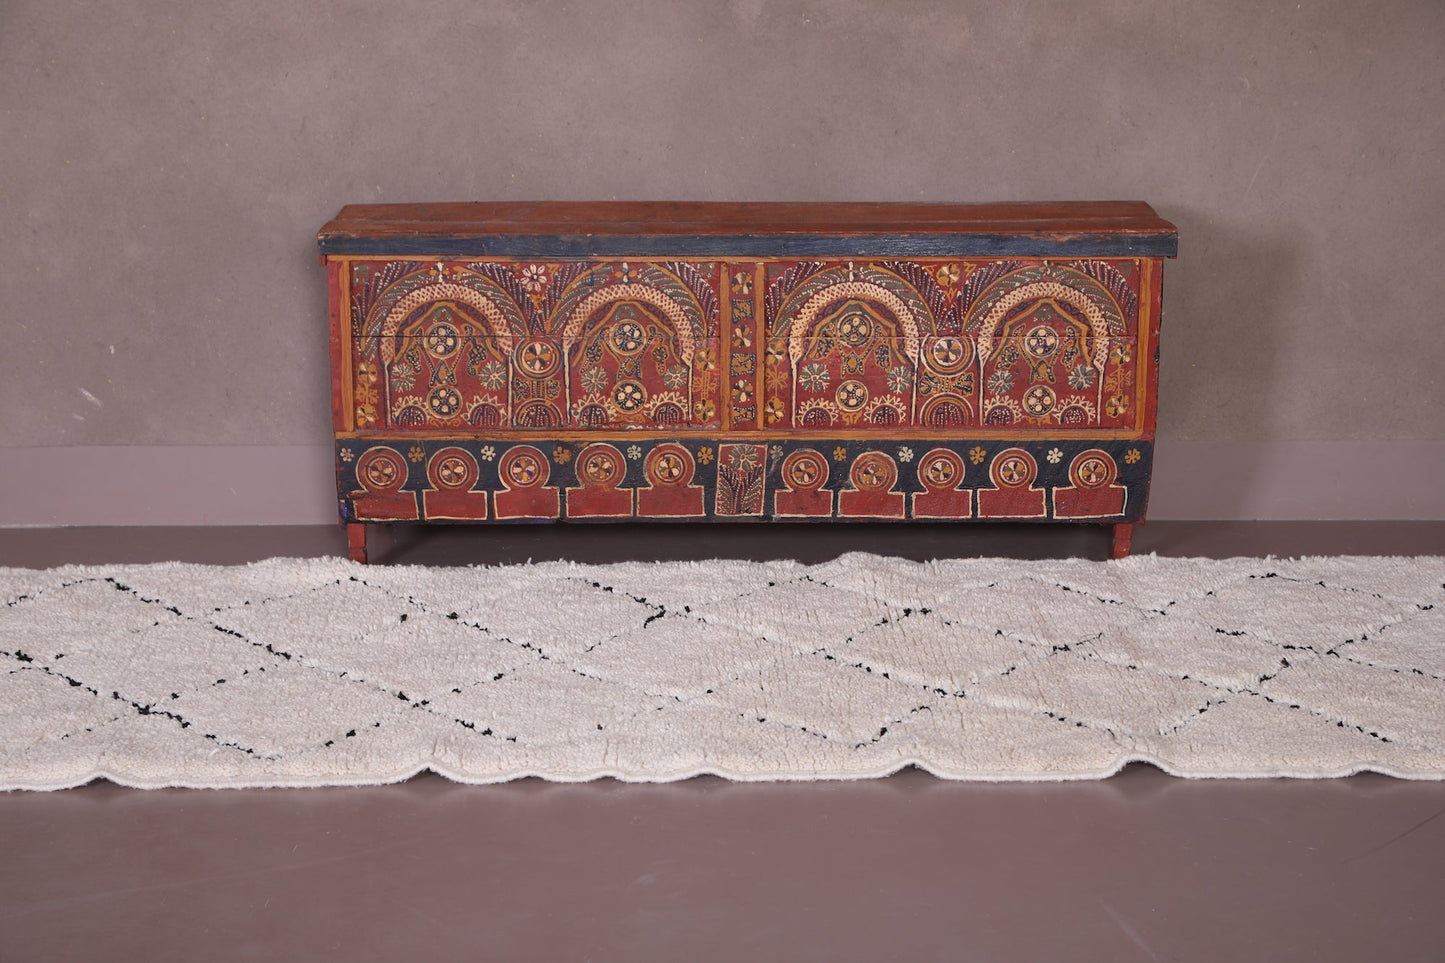 Custom moroccan runner rug, All wool berber carpet